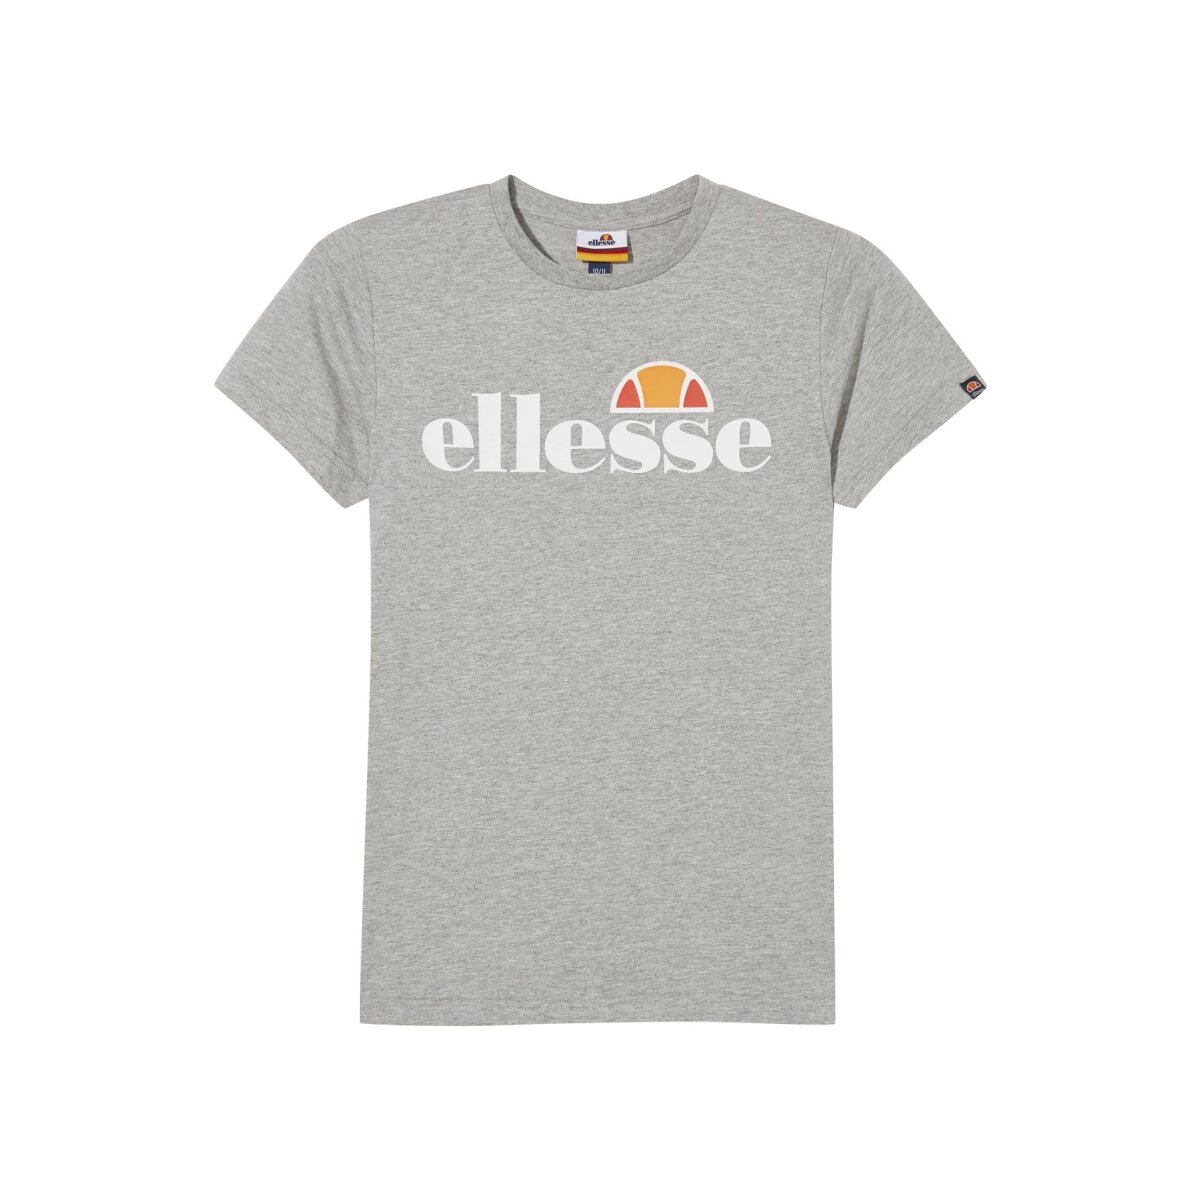 ellesse T-Shirt für Jungen - MALINA, 23,45 €